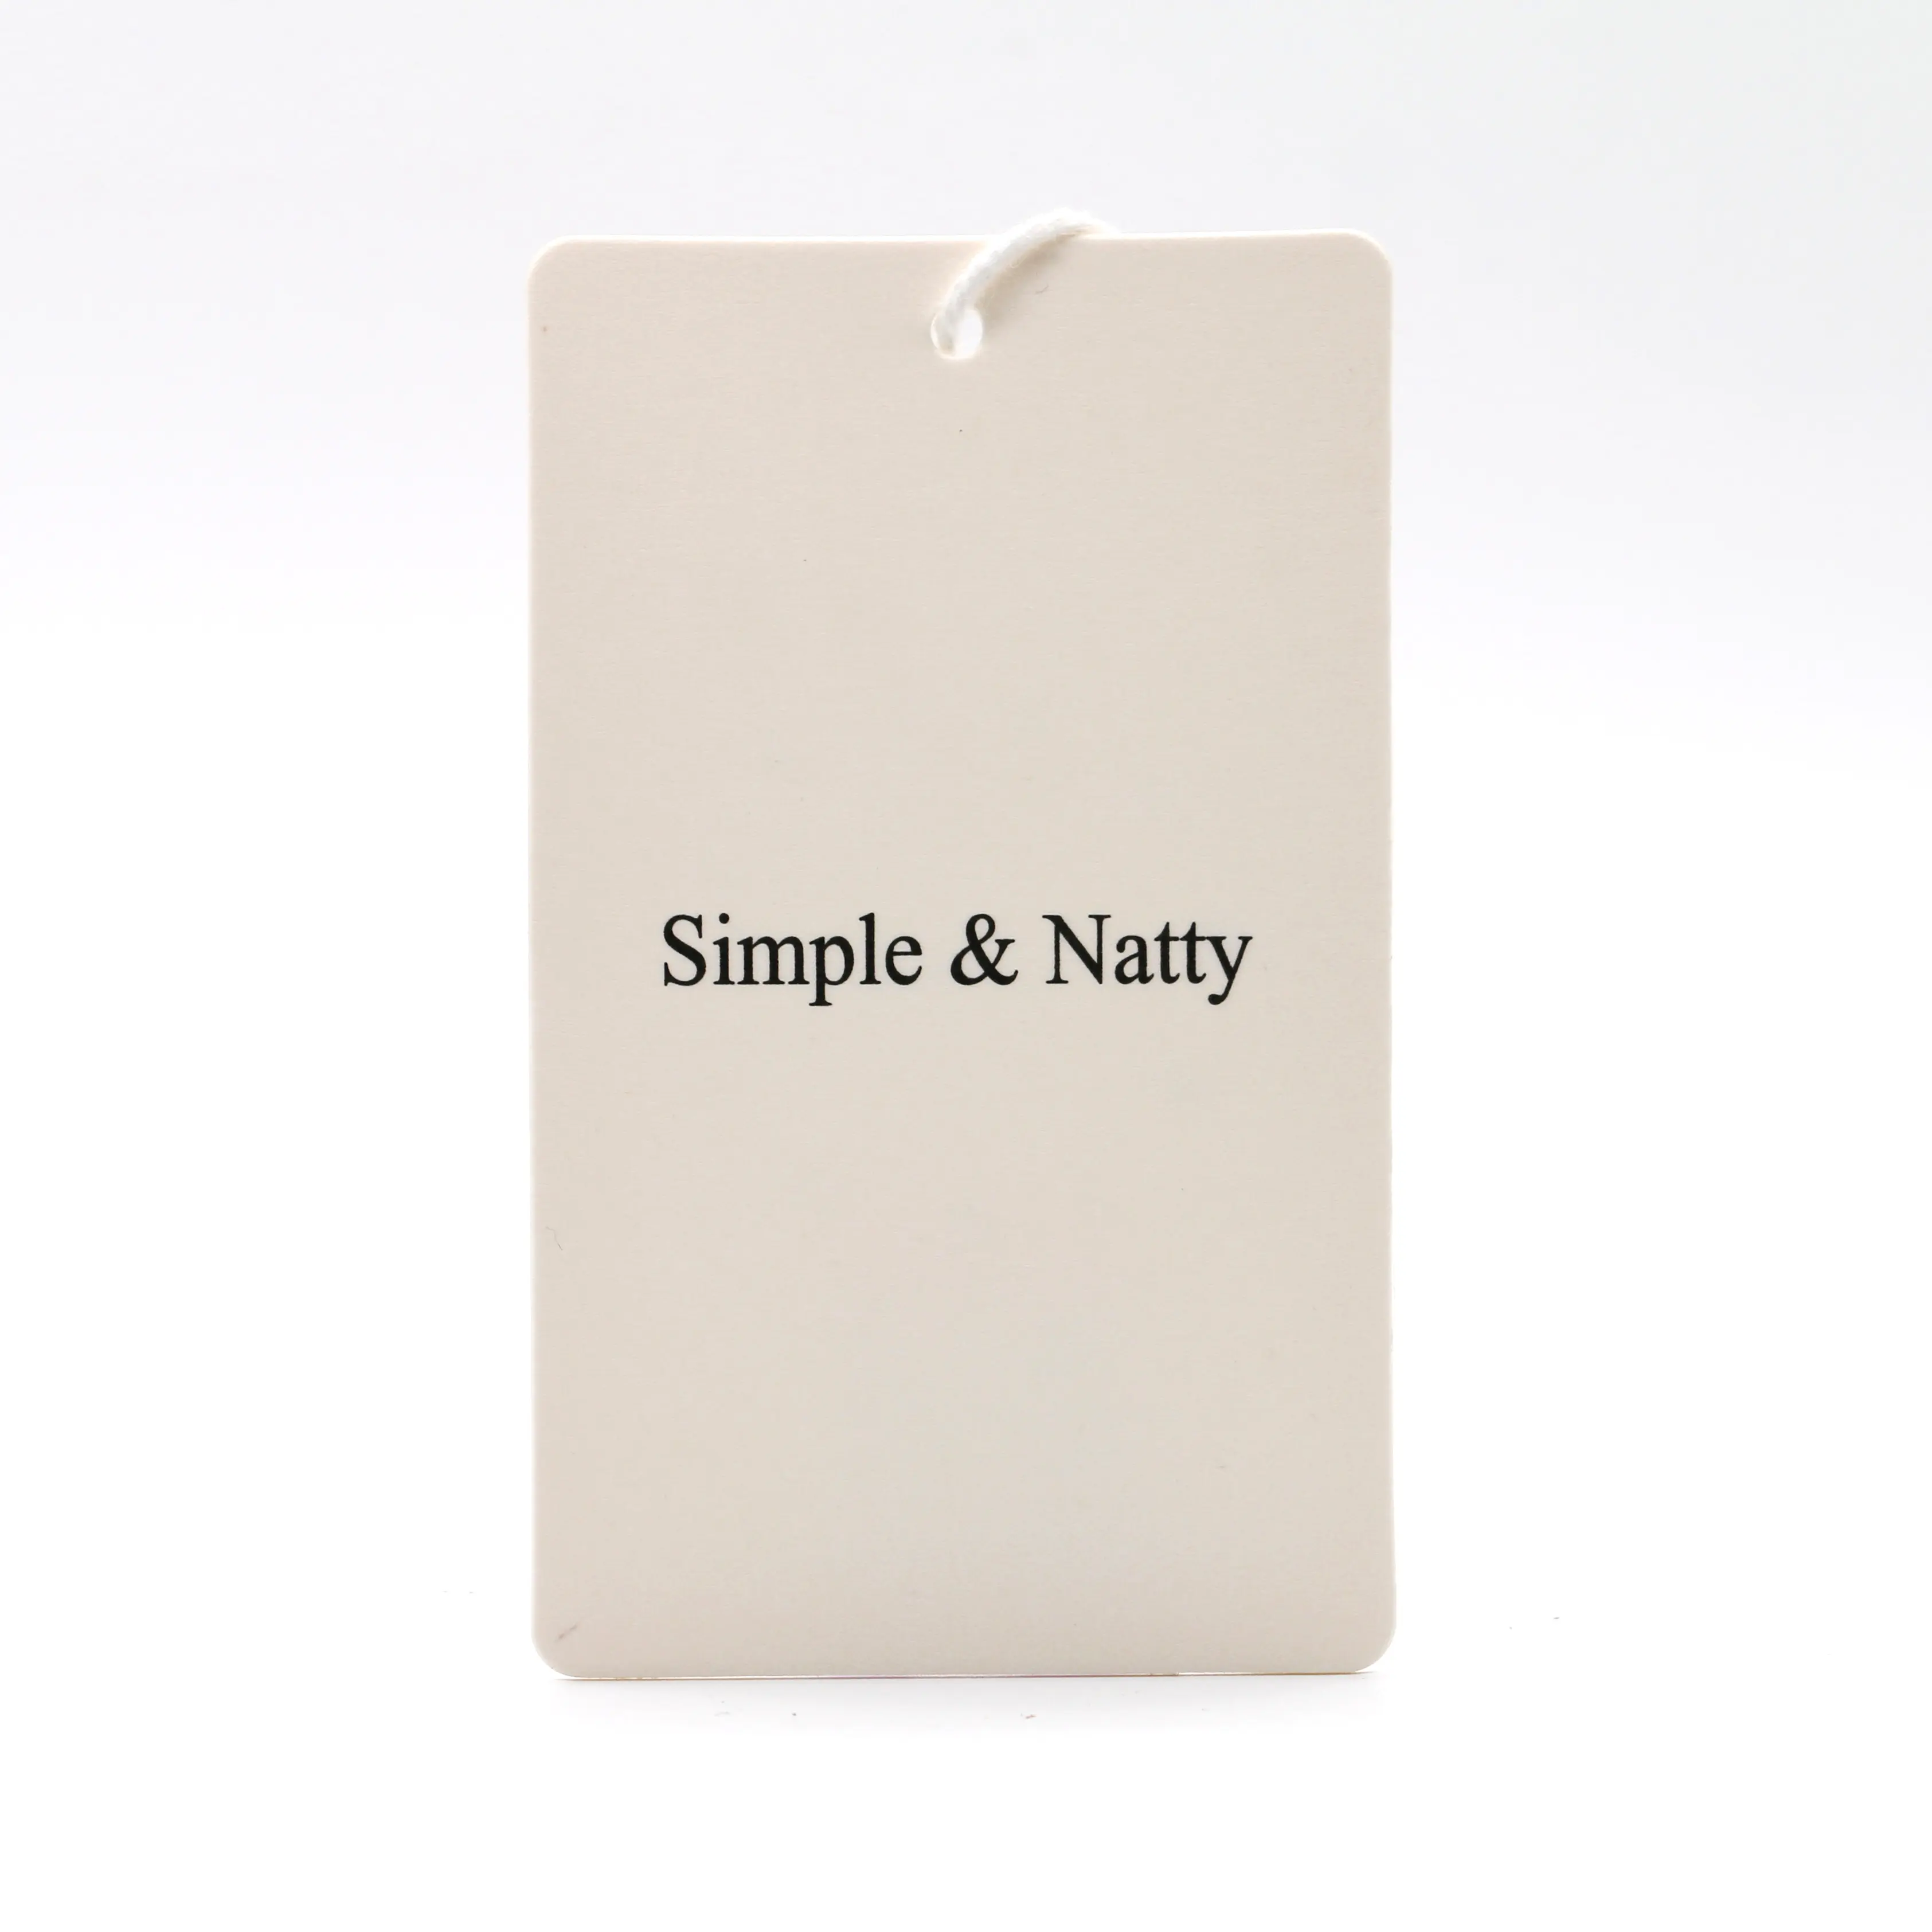 Etiqueta de papel blanco marfil personalizada para colgar ropa, alta gama